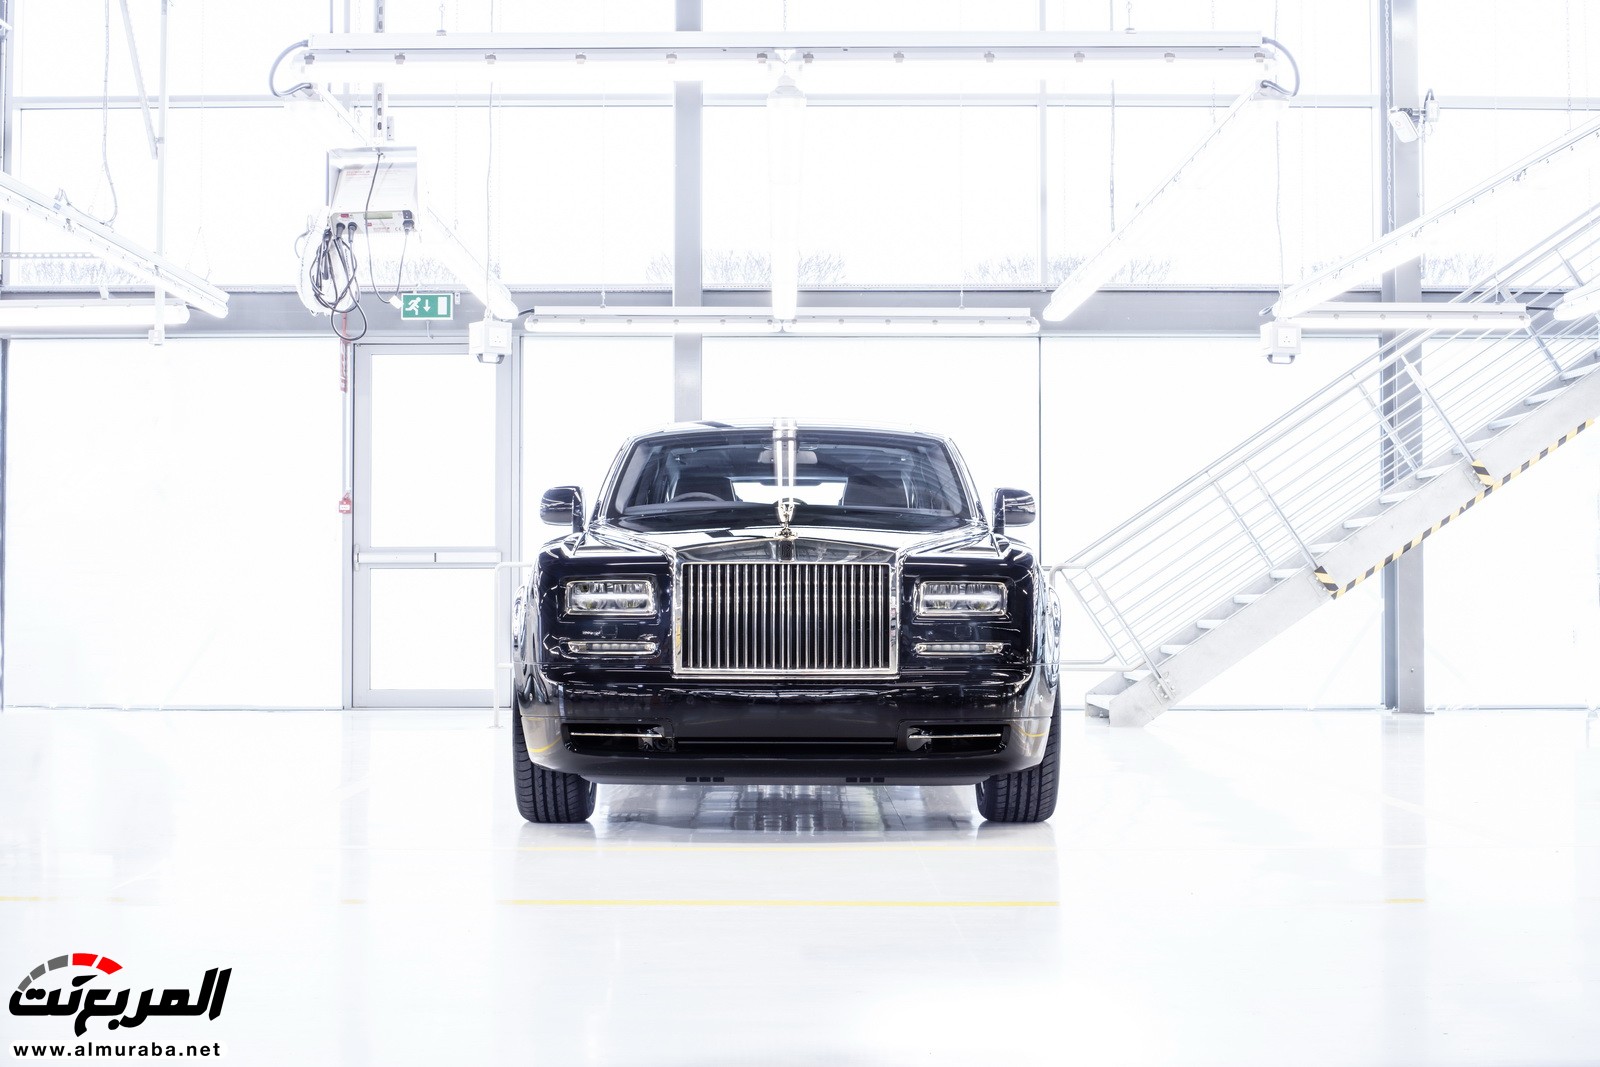 "رولز رويس" تختتم دورة حياة الجيل السابع من الفانتوم بإنتاج نسخة One-Off الخاصة Rolls-Royce Phantom 4